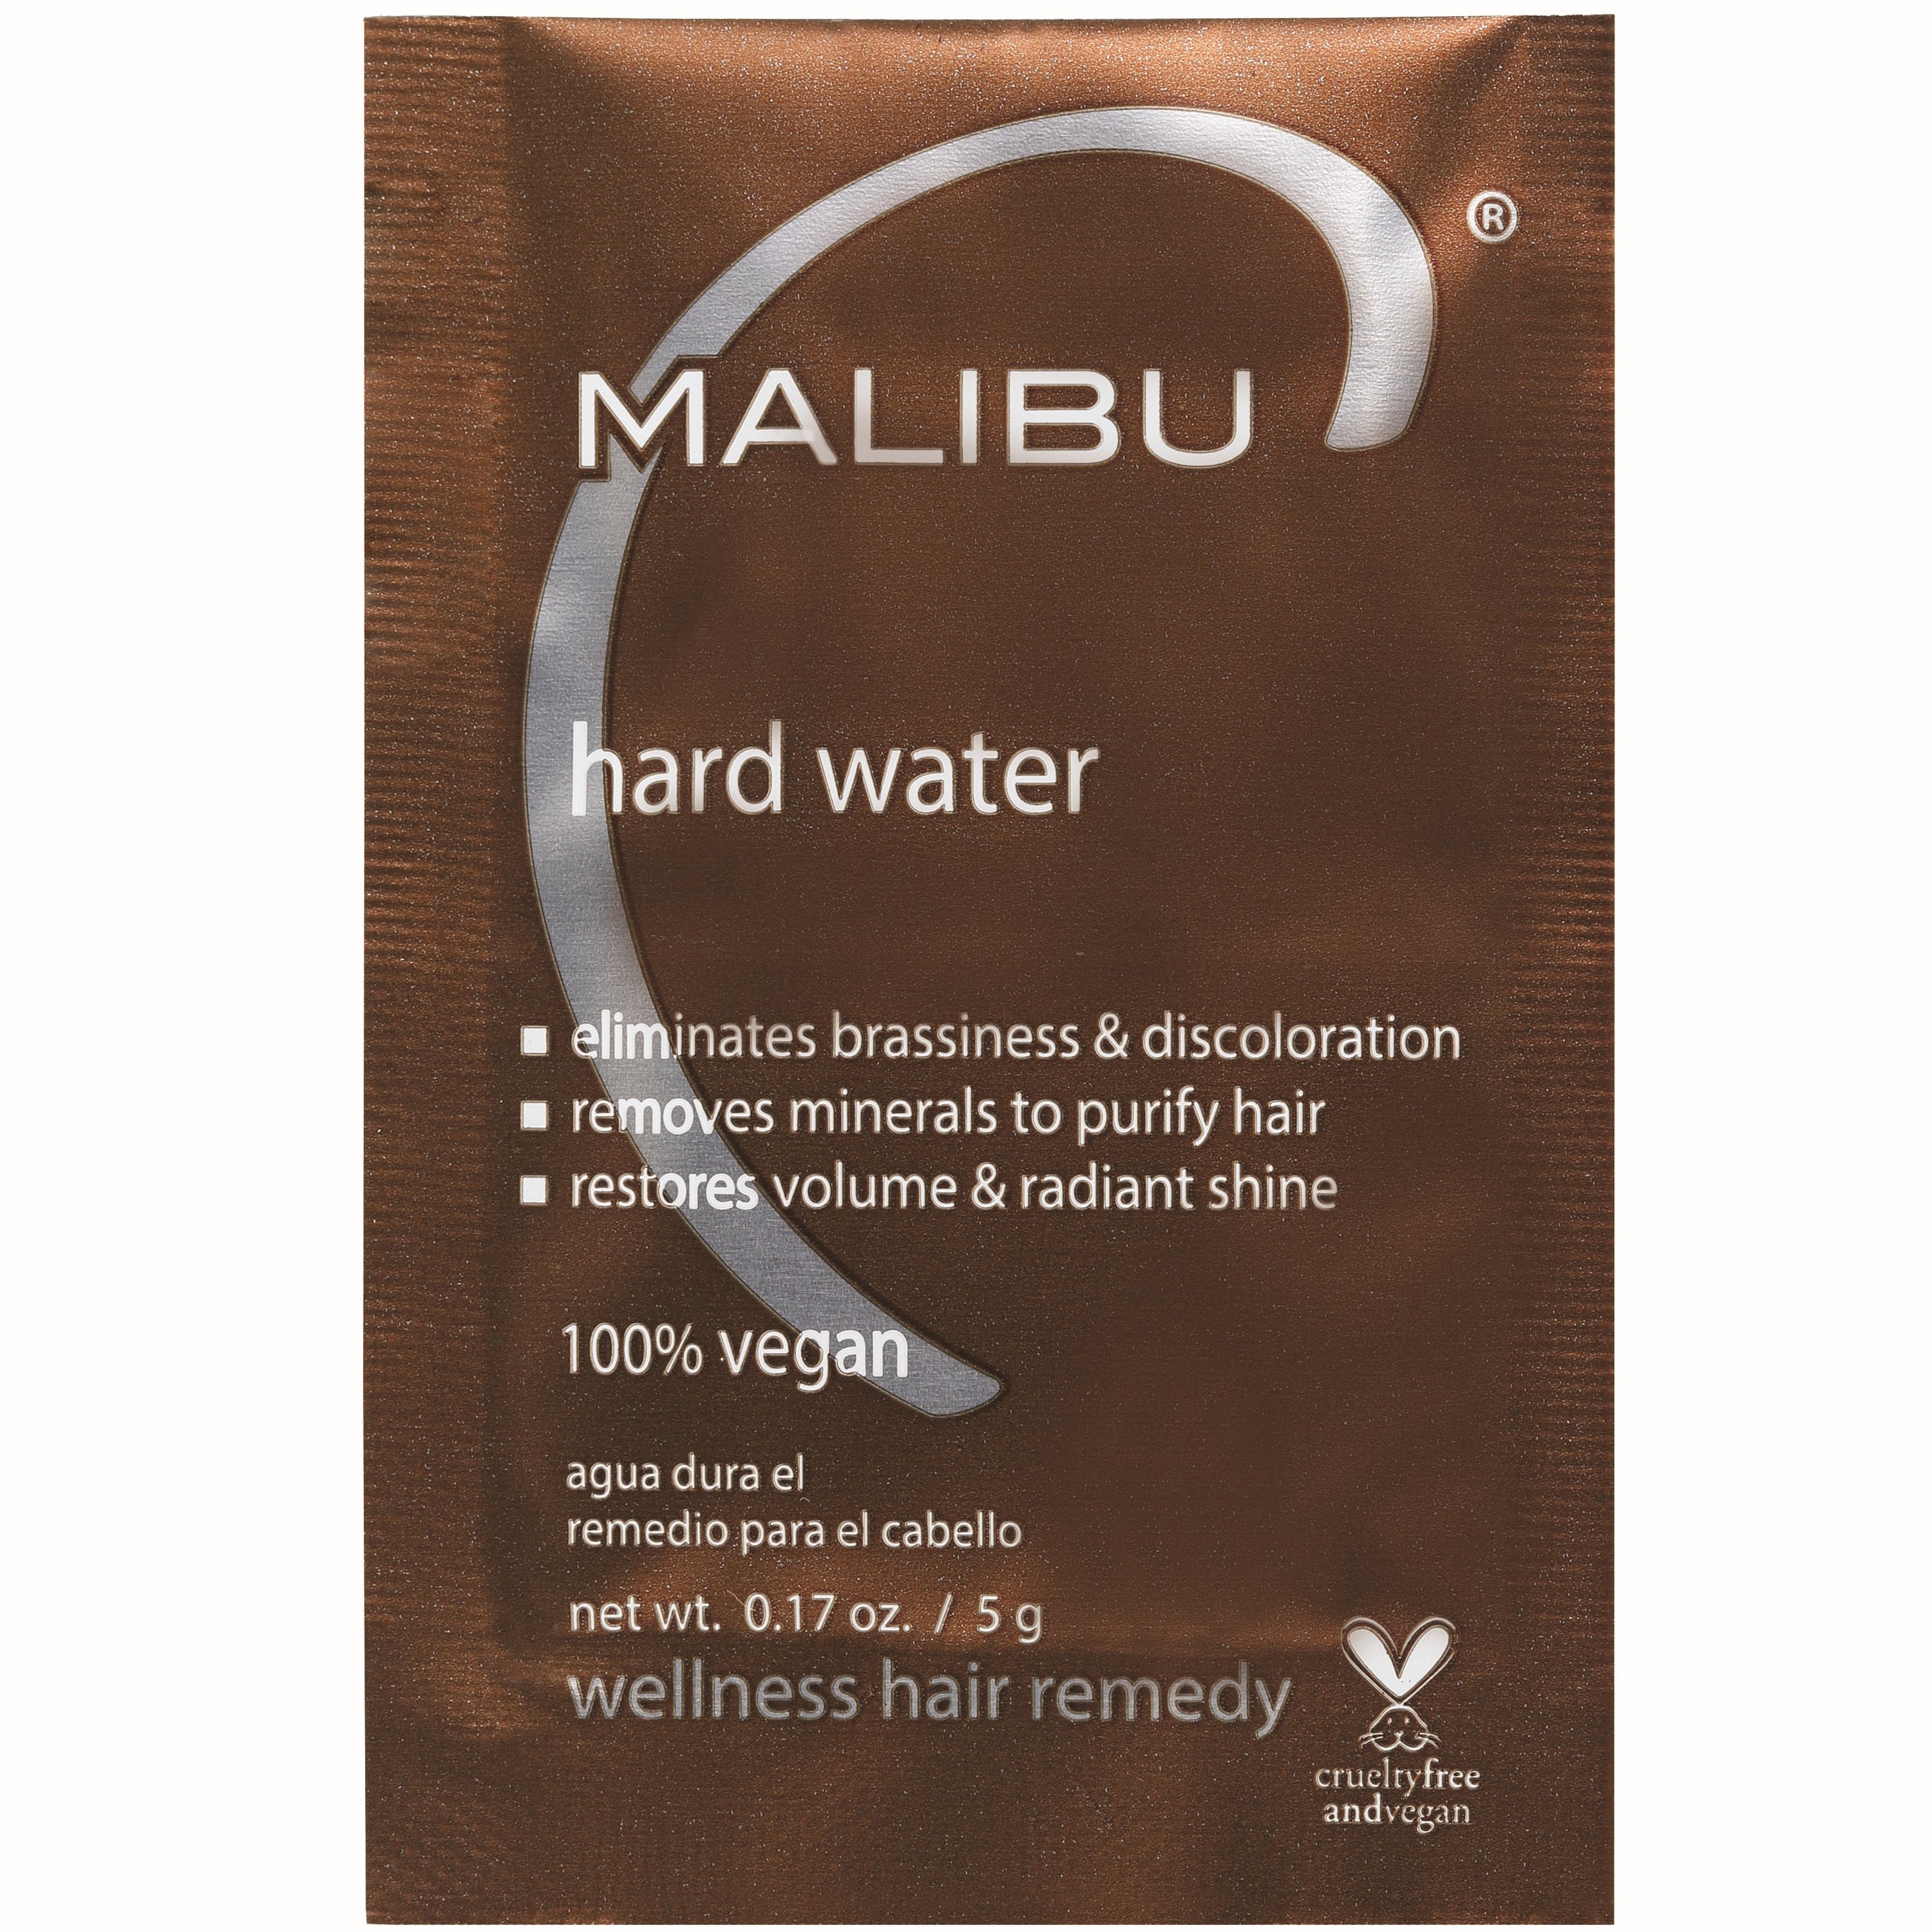 Malibu Hair Care Malibu C Hard Water Wellness Hair Remedy, 1 Packet - 0.17 Oz , CVS